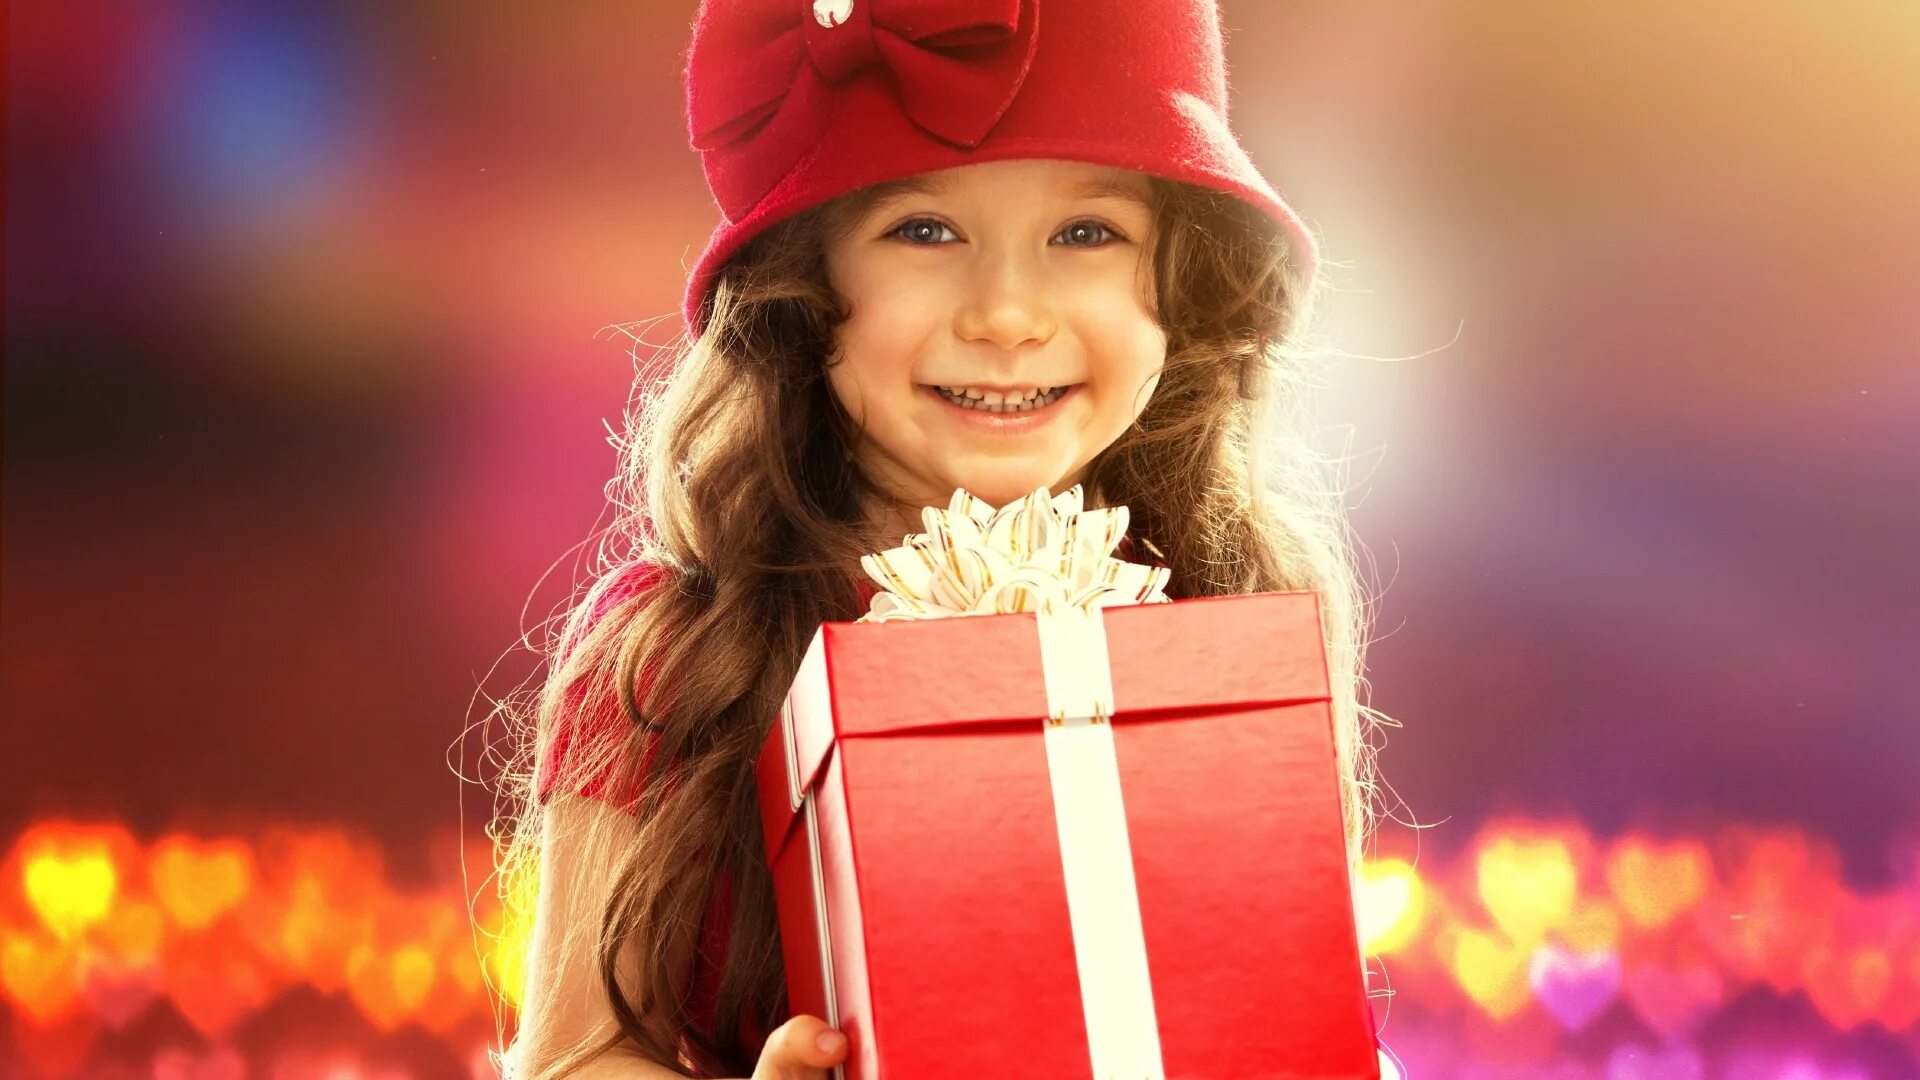 Как приятно получать подарки. Подарок для девочки. Ребенок дарит подарок. Счастливая девушка с подарком. Подарок девушке.